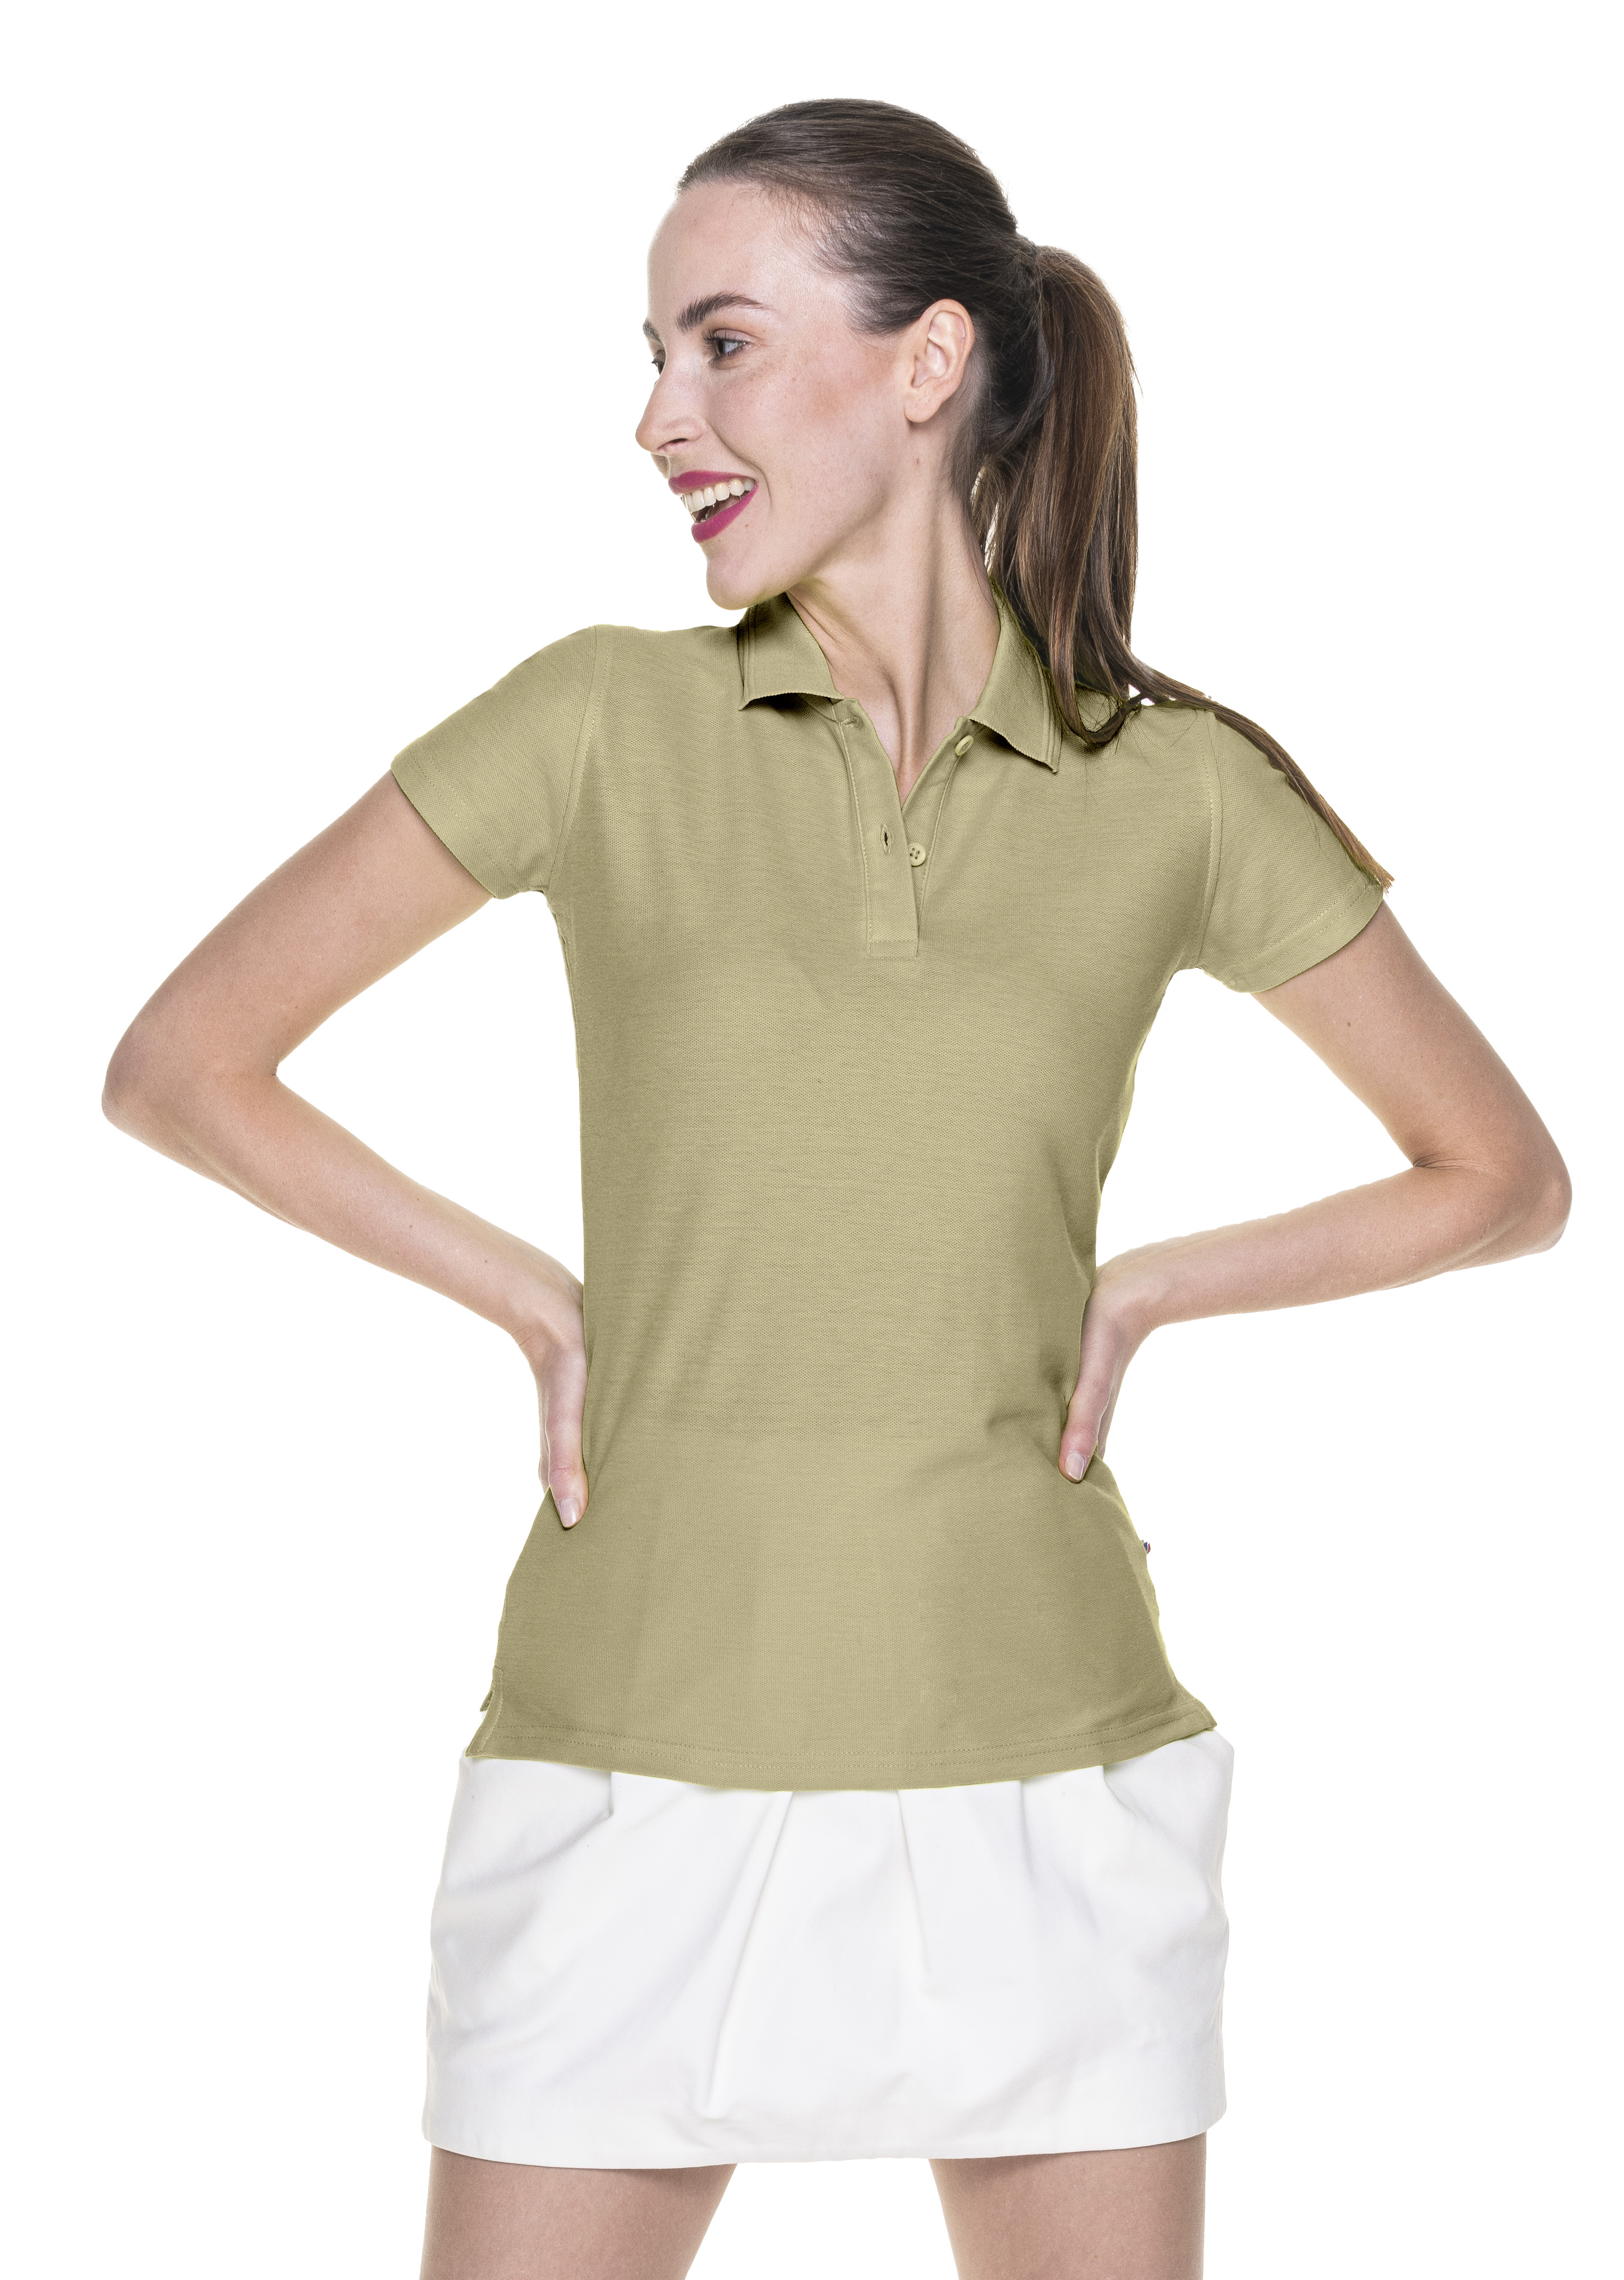 Koszulka Promostars Polo Ladies Cotton - beżowa